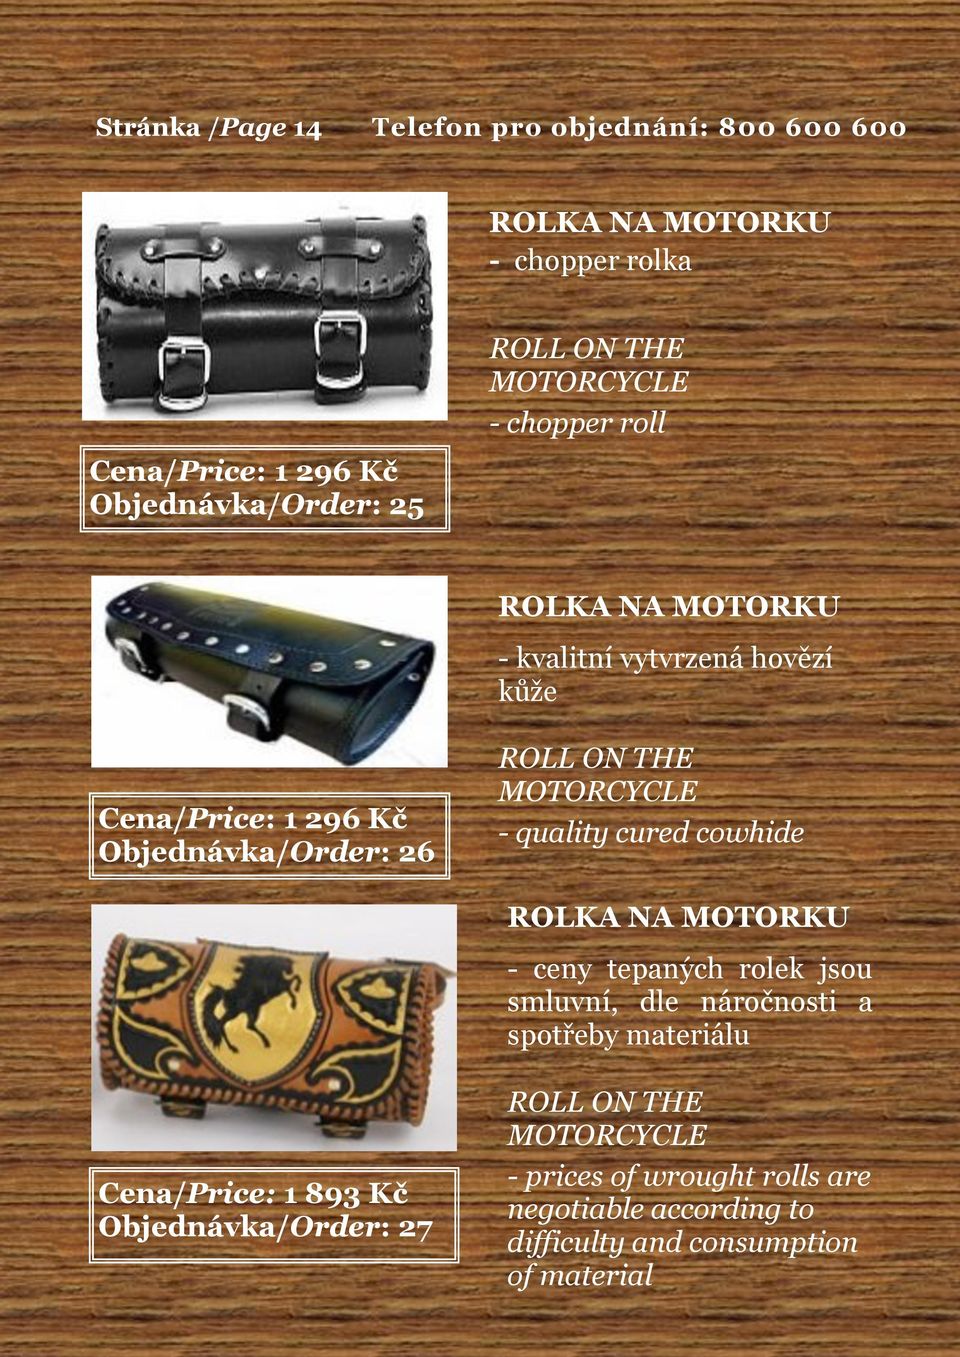 quality cured cowhide ROLKA NA MOTORKU - ceny tepaných rolek jsou smluvní, dle náročnosti a spotřeby materiálu Cena/Price: 1 893